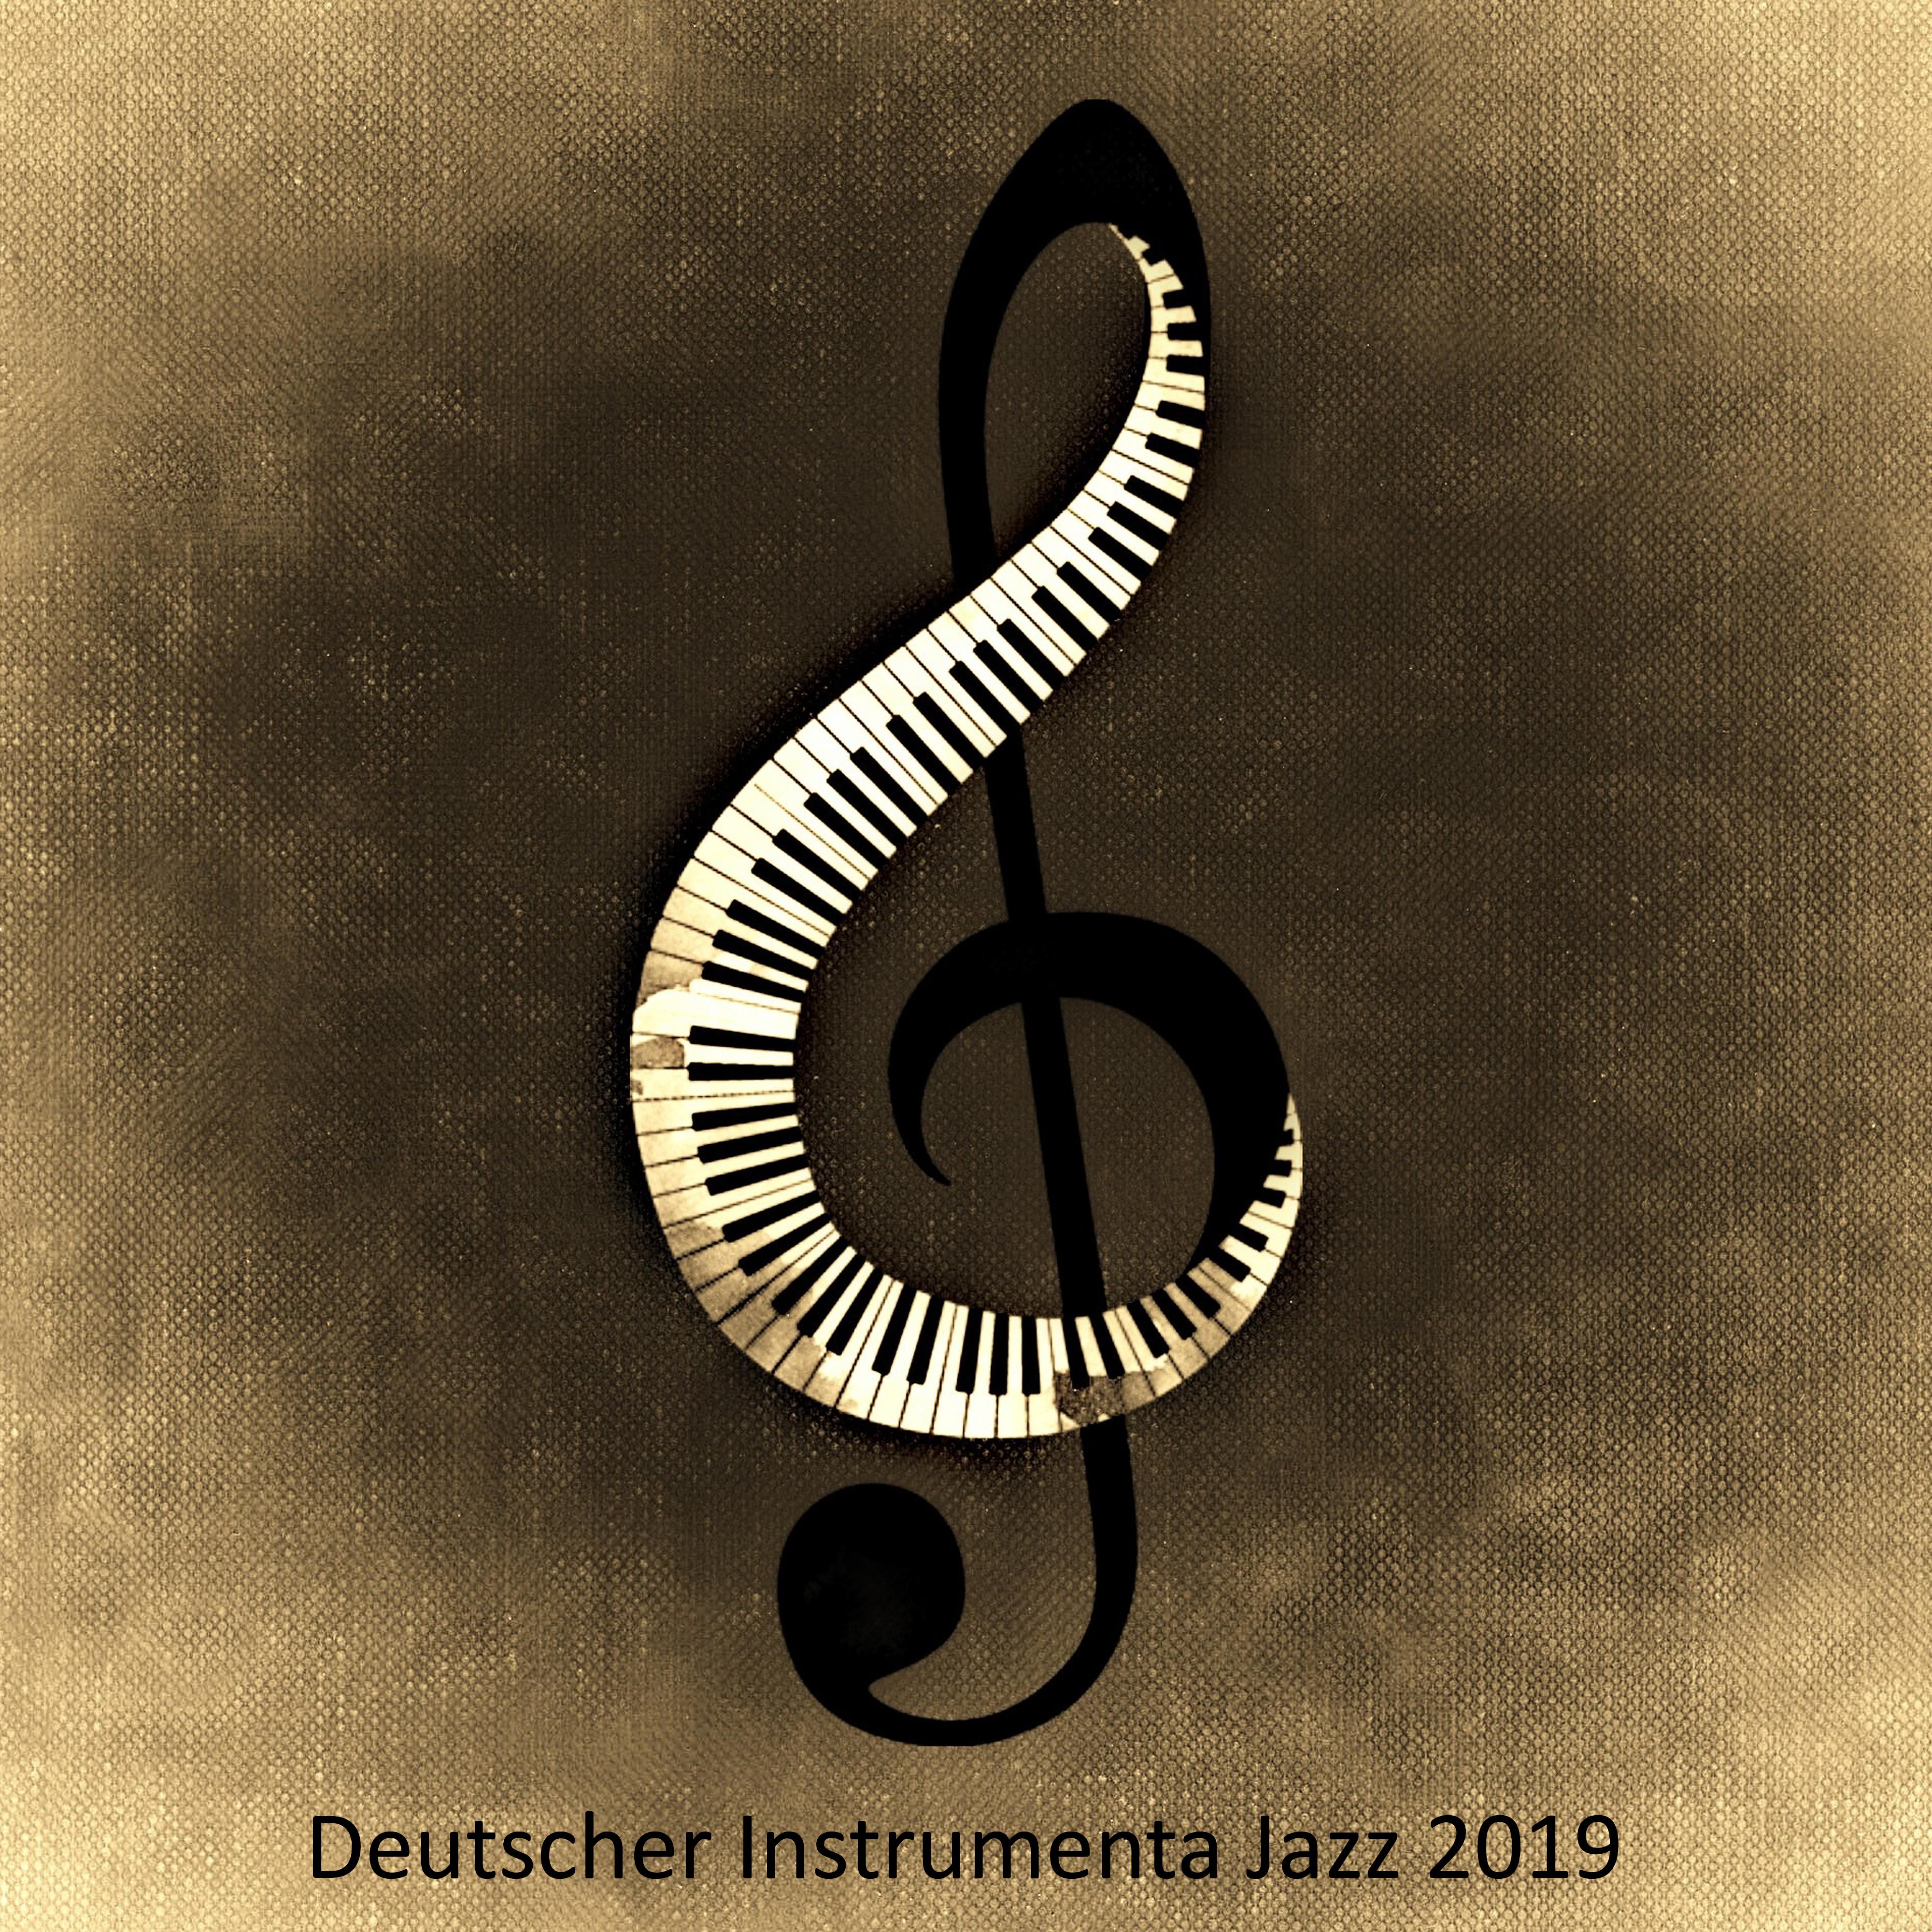 Deutscher Instrumental Jazz 2019